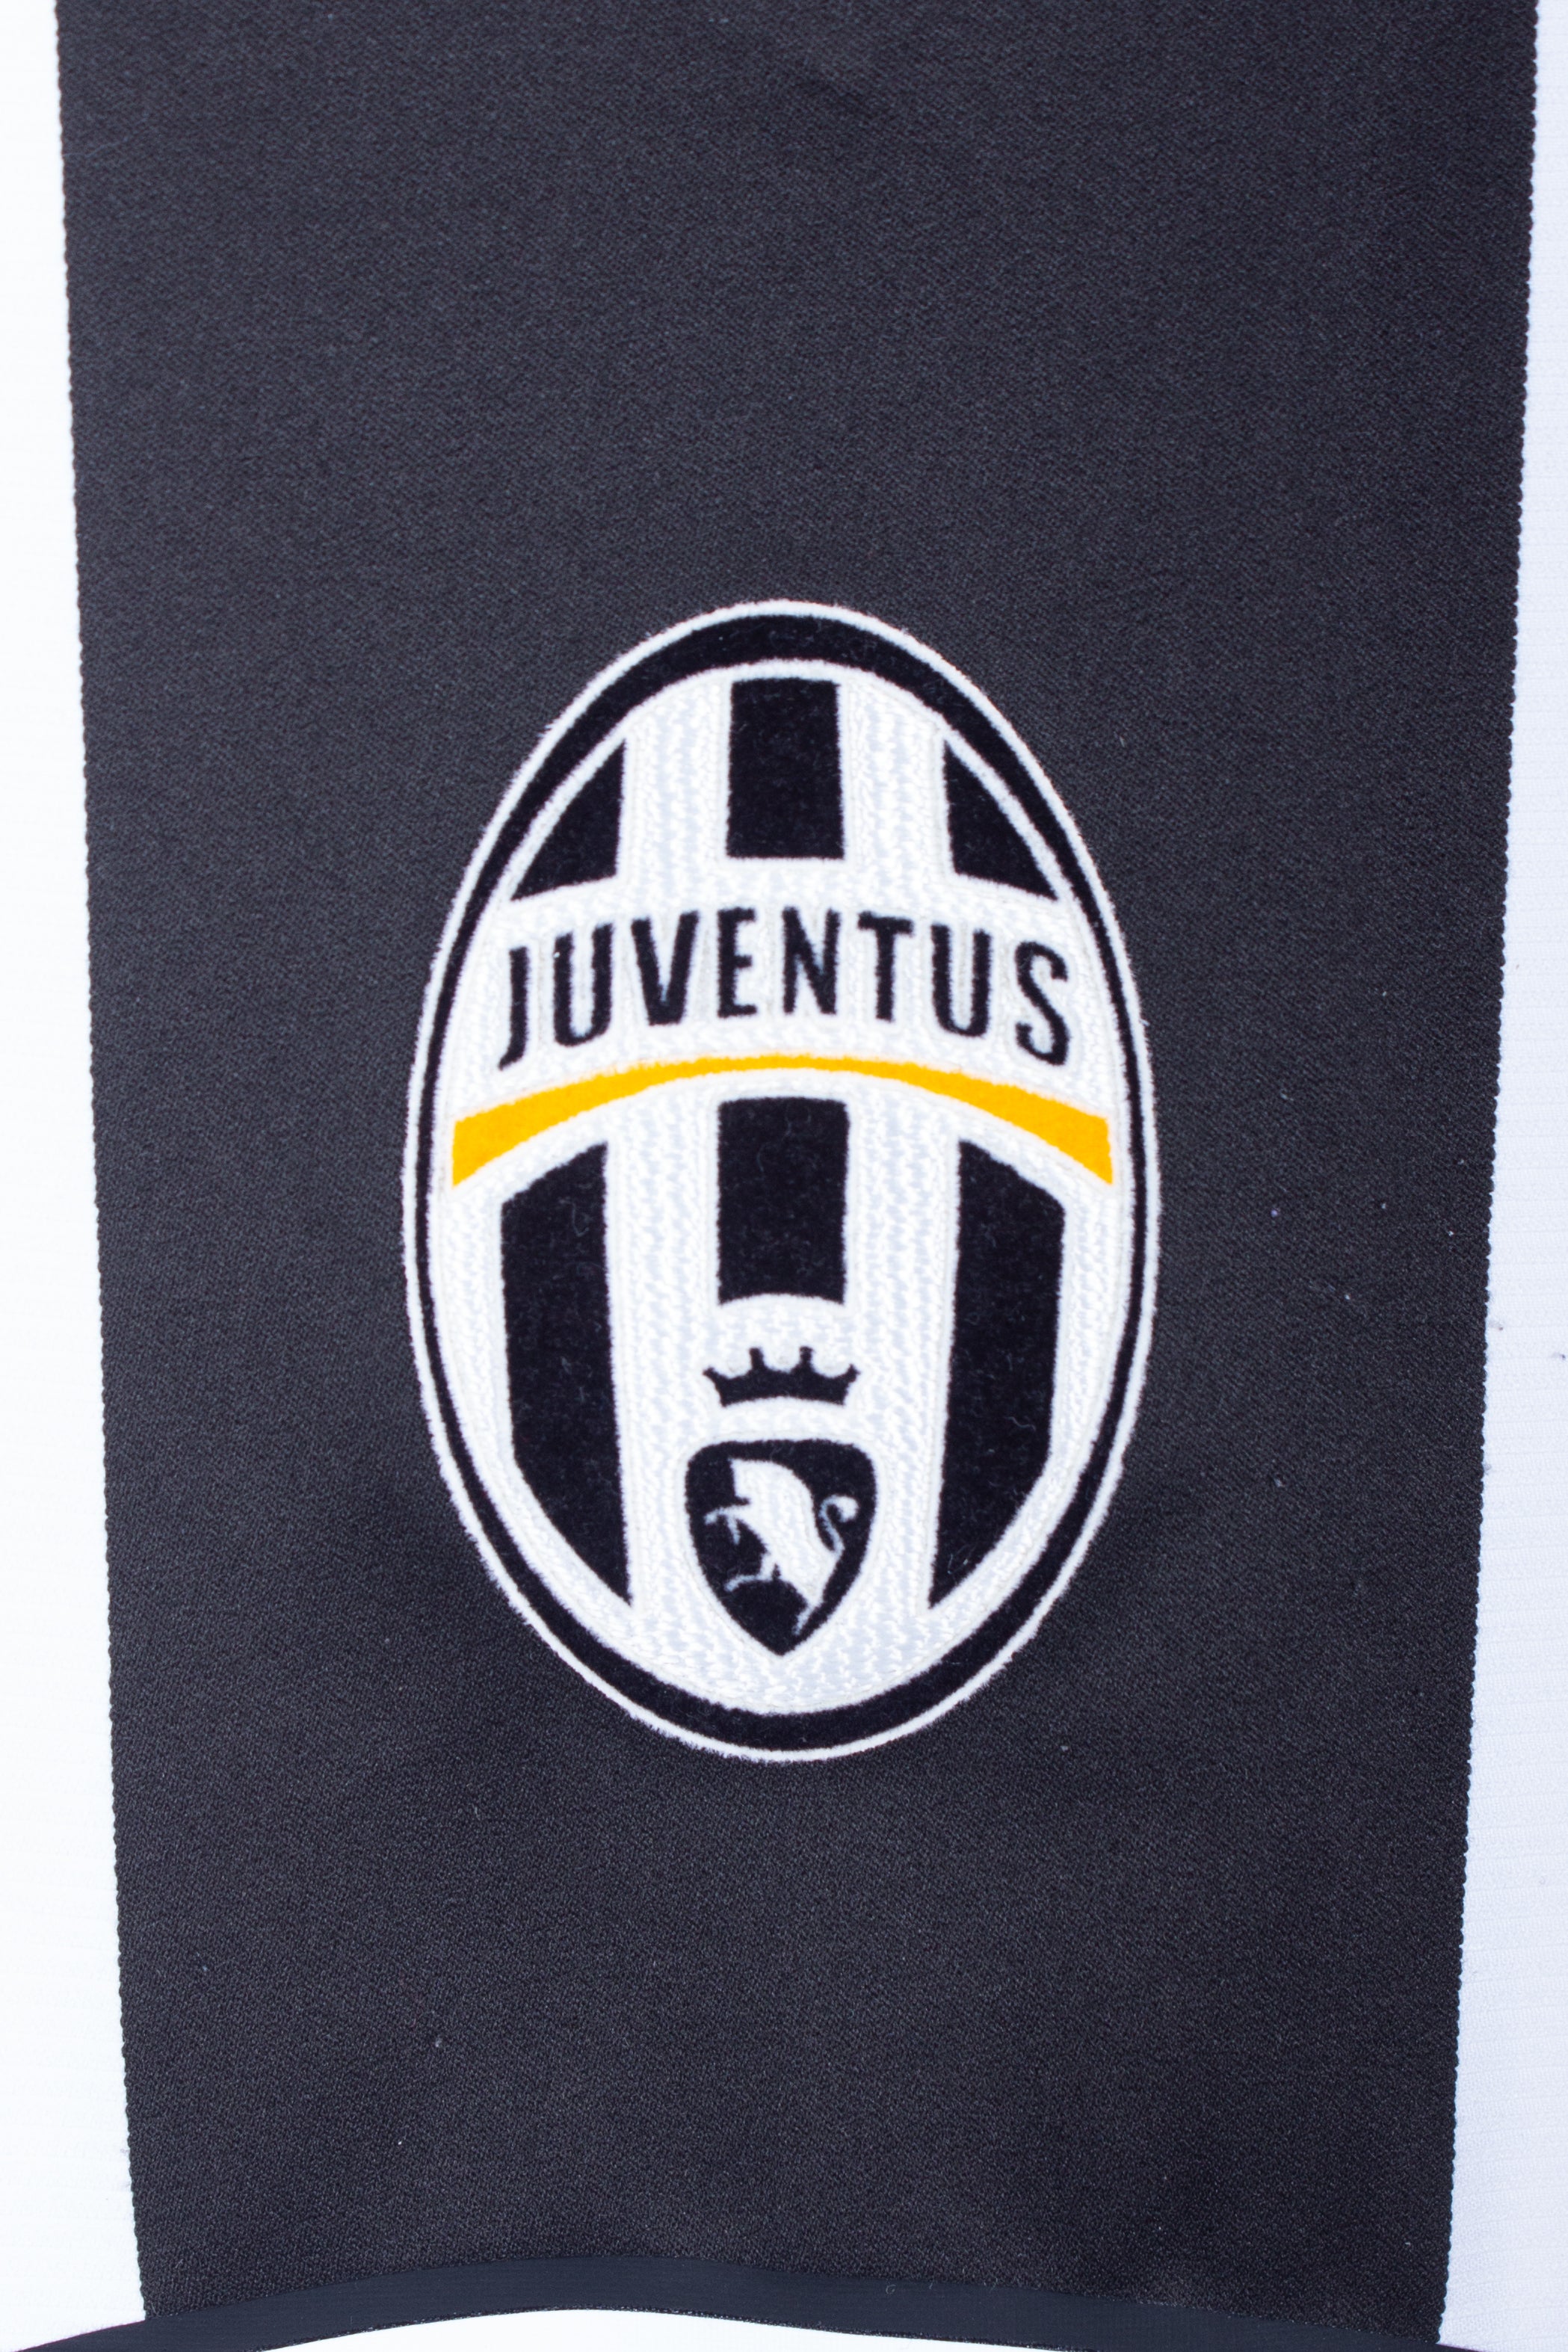 Juventus 2004/05 European Home Shirt